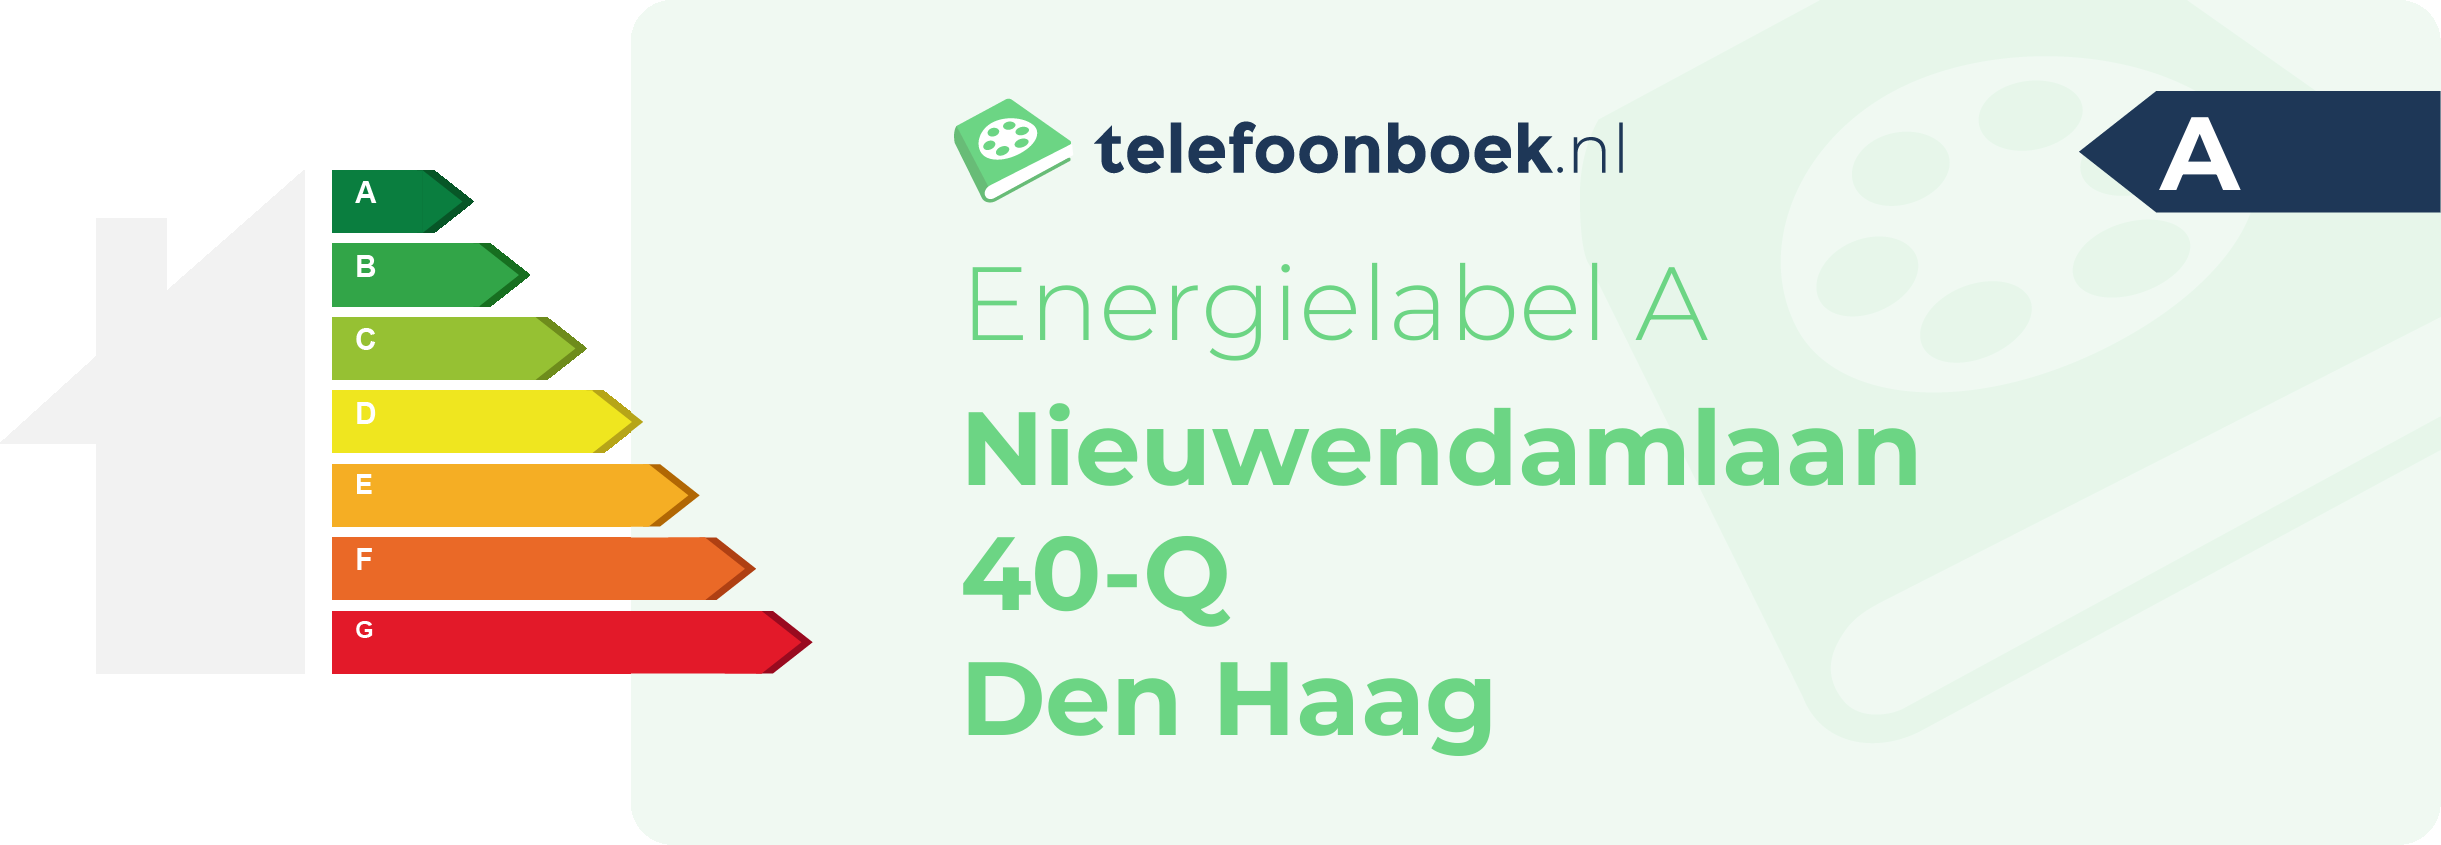 Energielabel Nieuwendamlaan 40-Q Den Haag